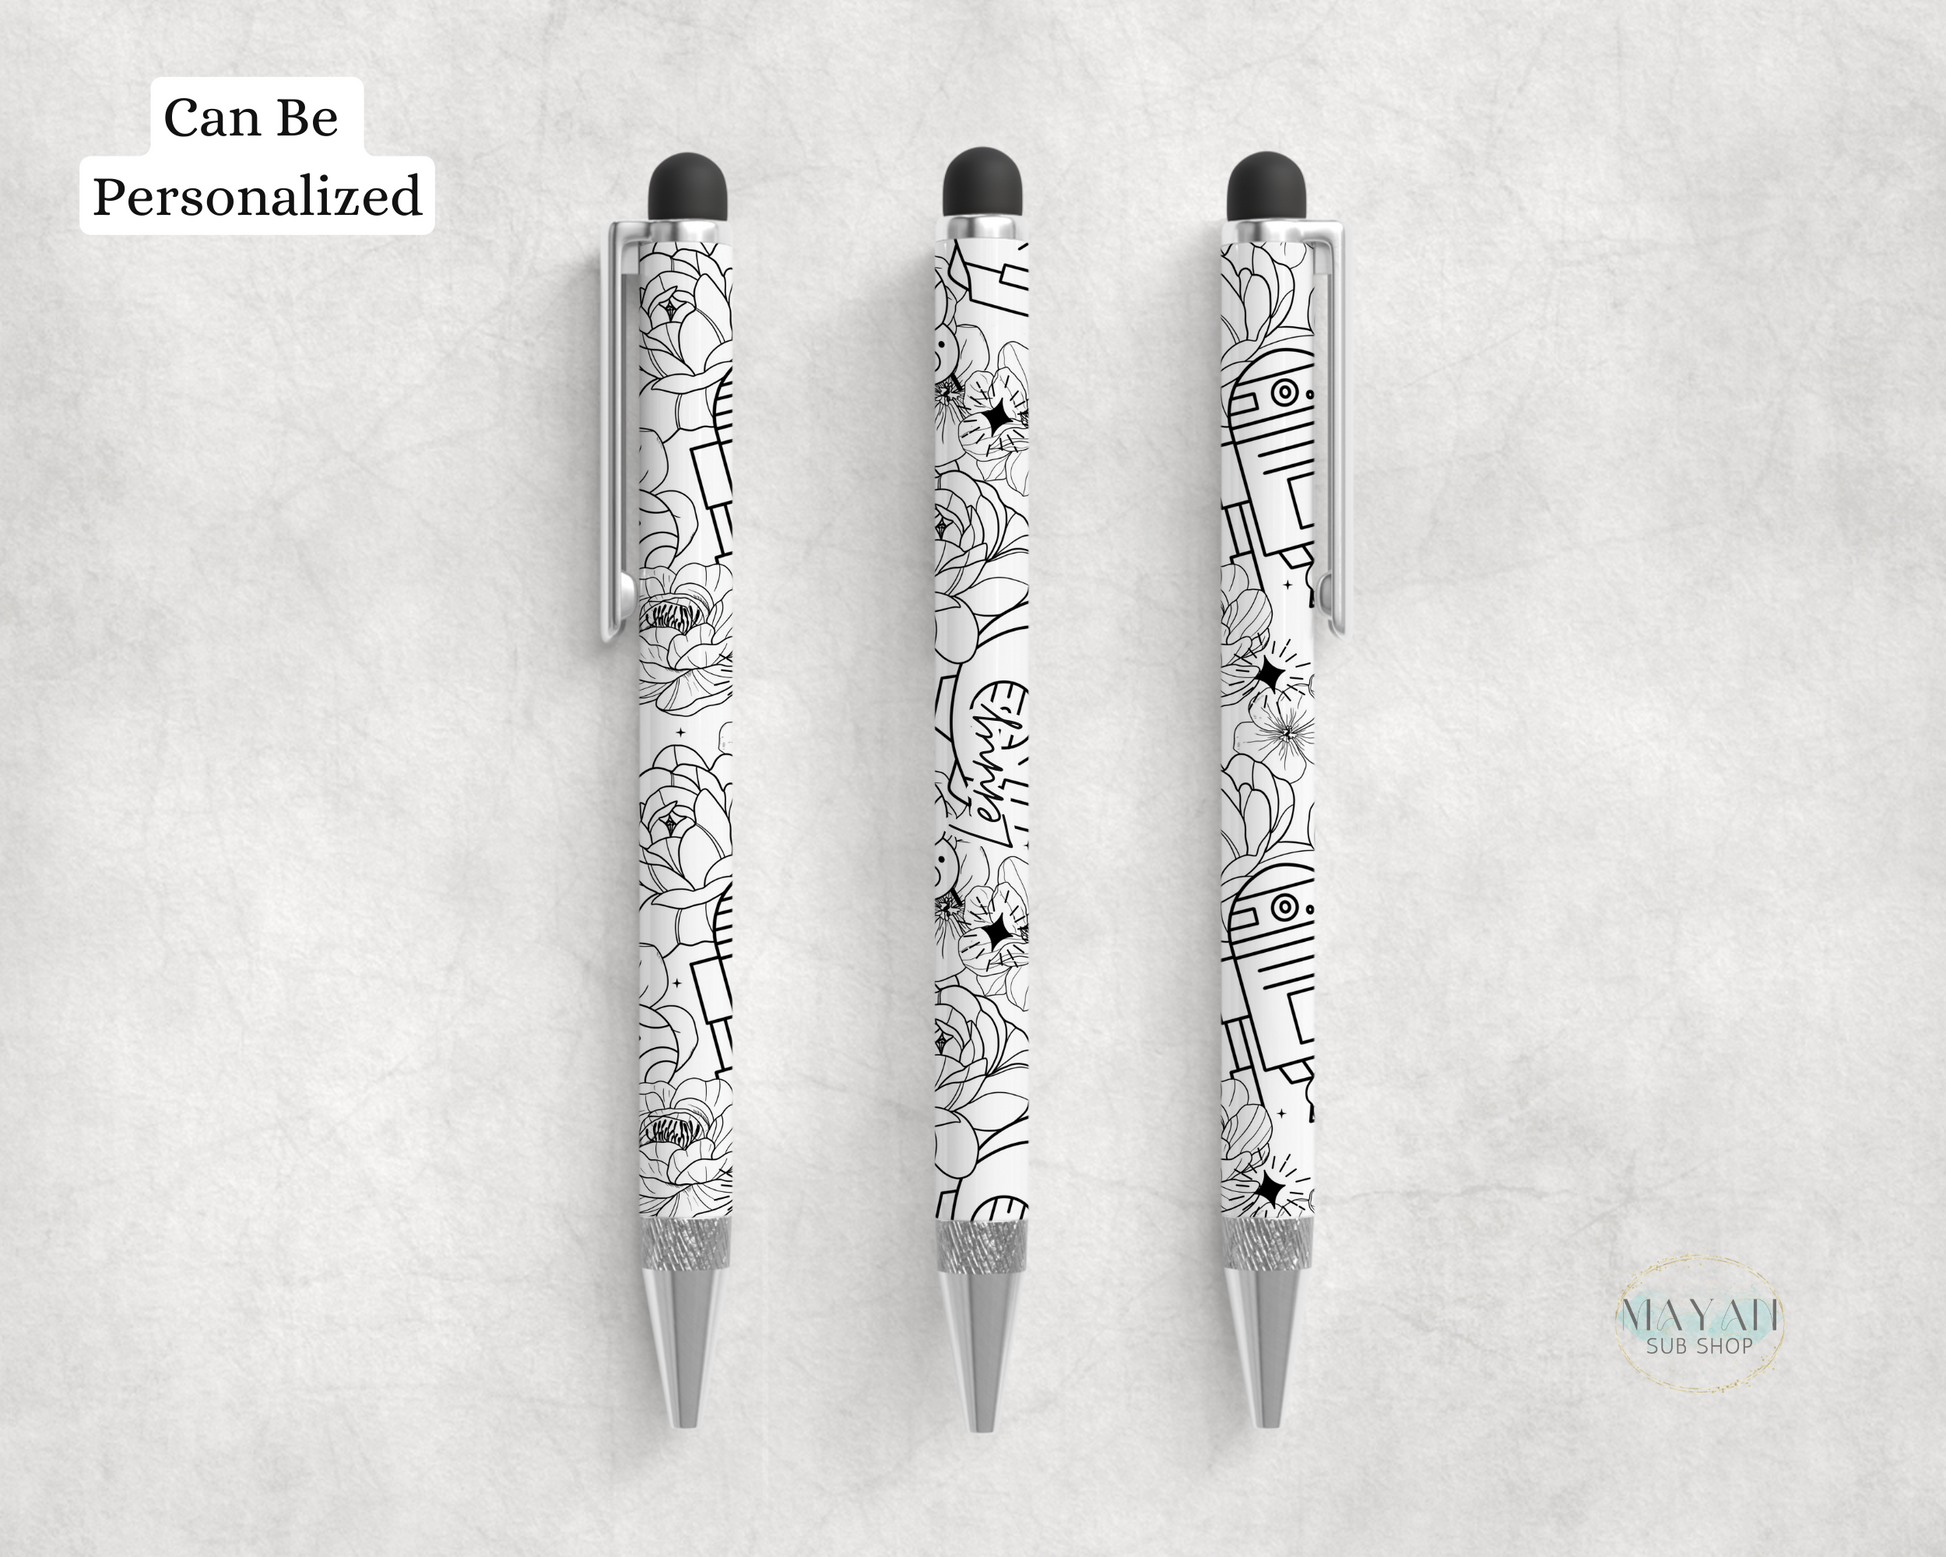 Droids white ballpoint pen. -Mayan Sub Shop